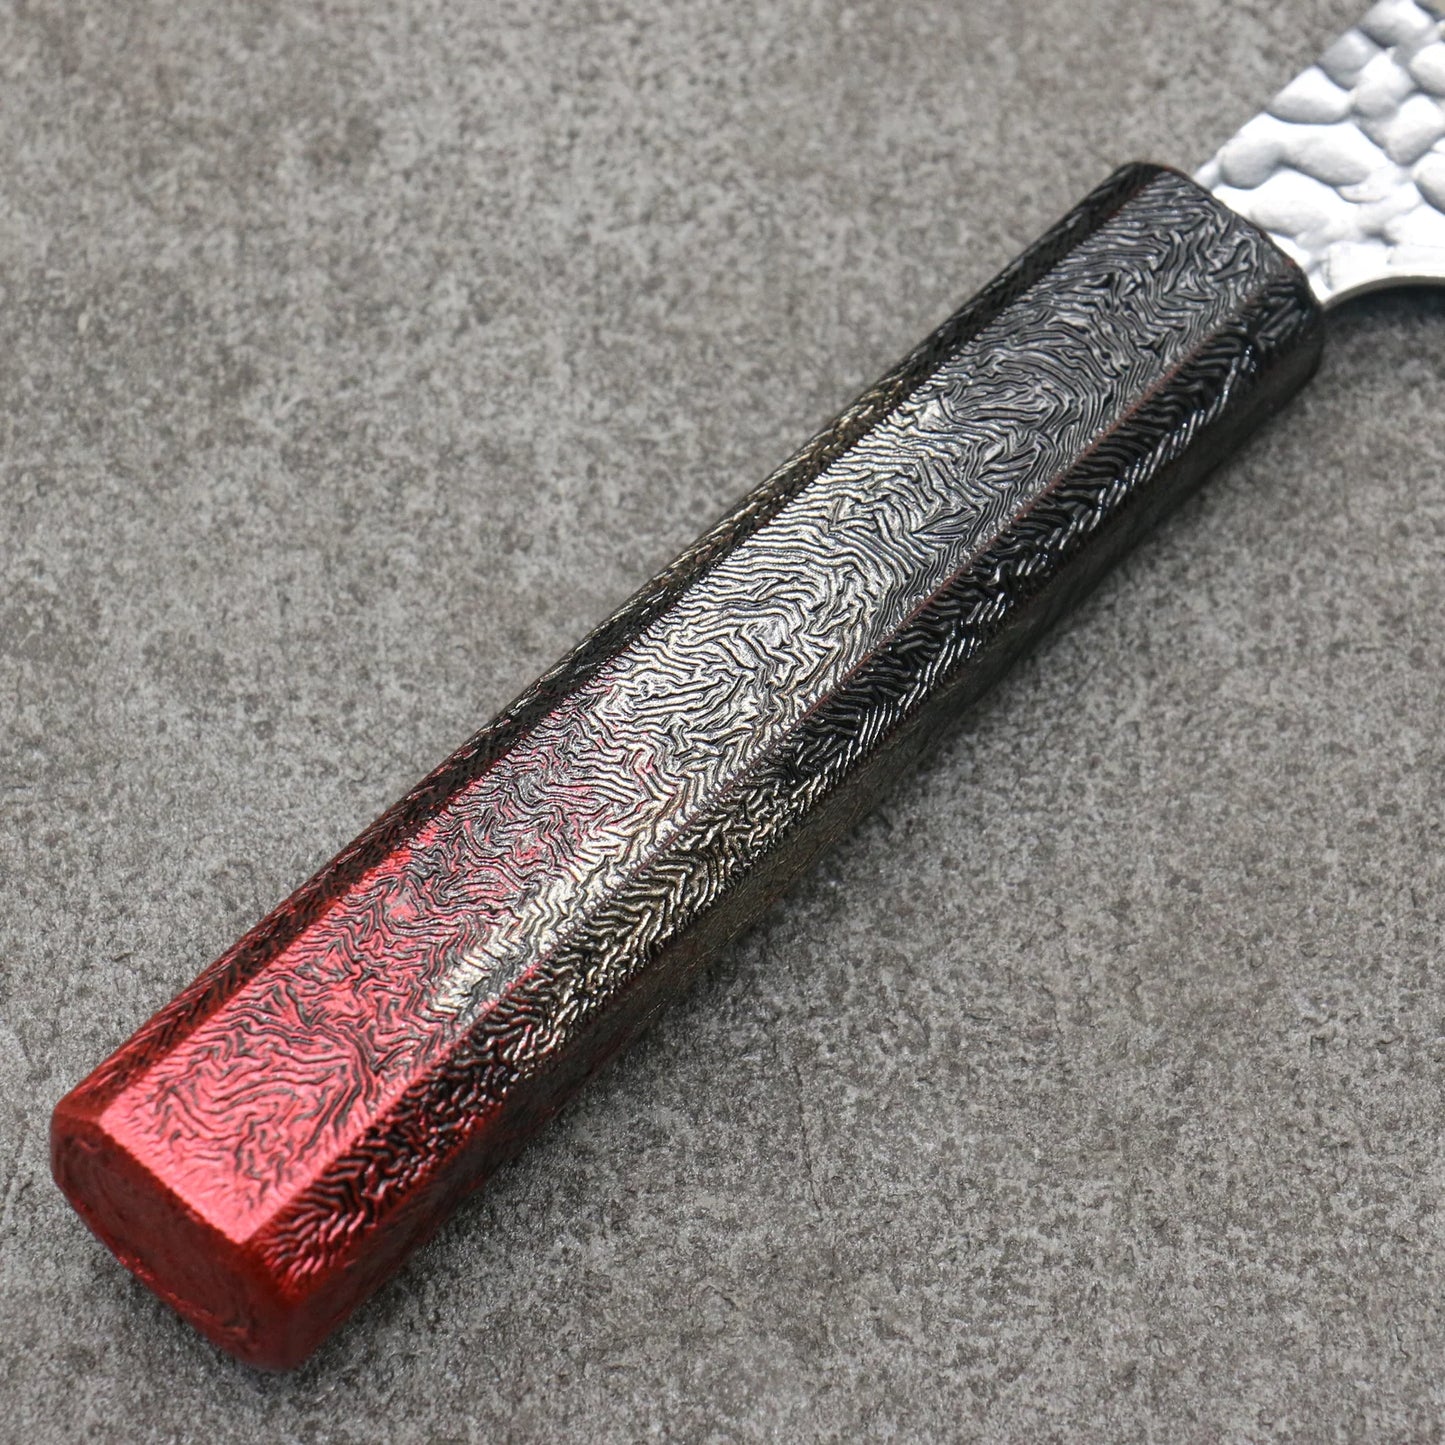 Sakai Takayuki Rinnou VG10 33 Layer Damascus Kengata Santoku Japanese Knife 160mm Red Lacquered Handle